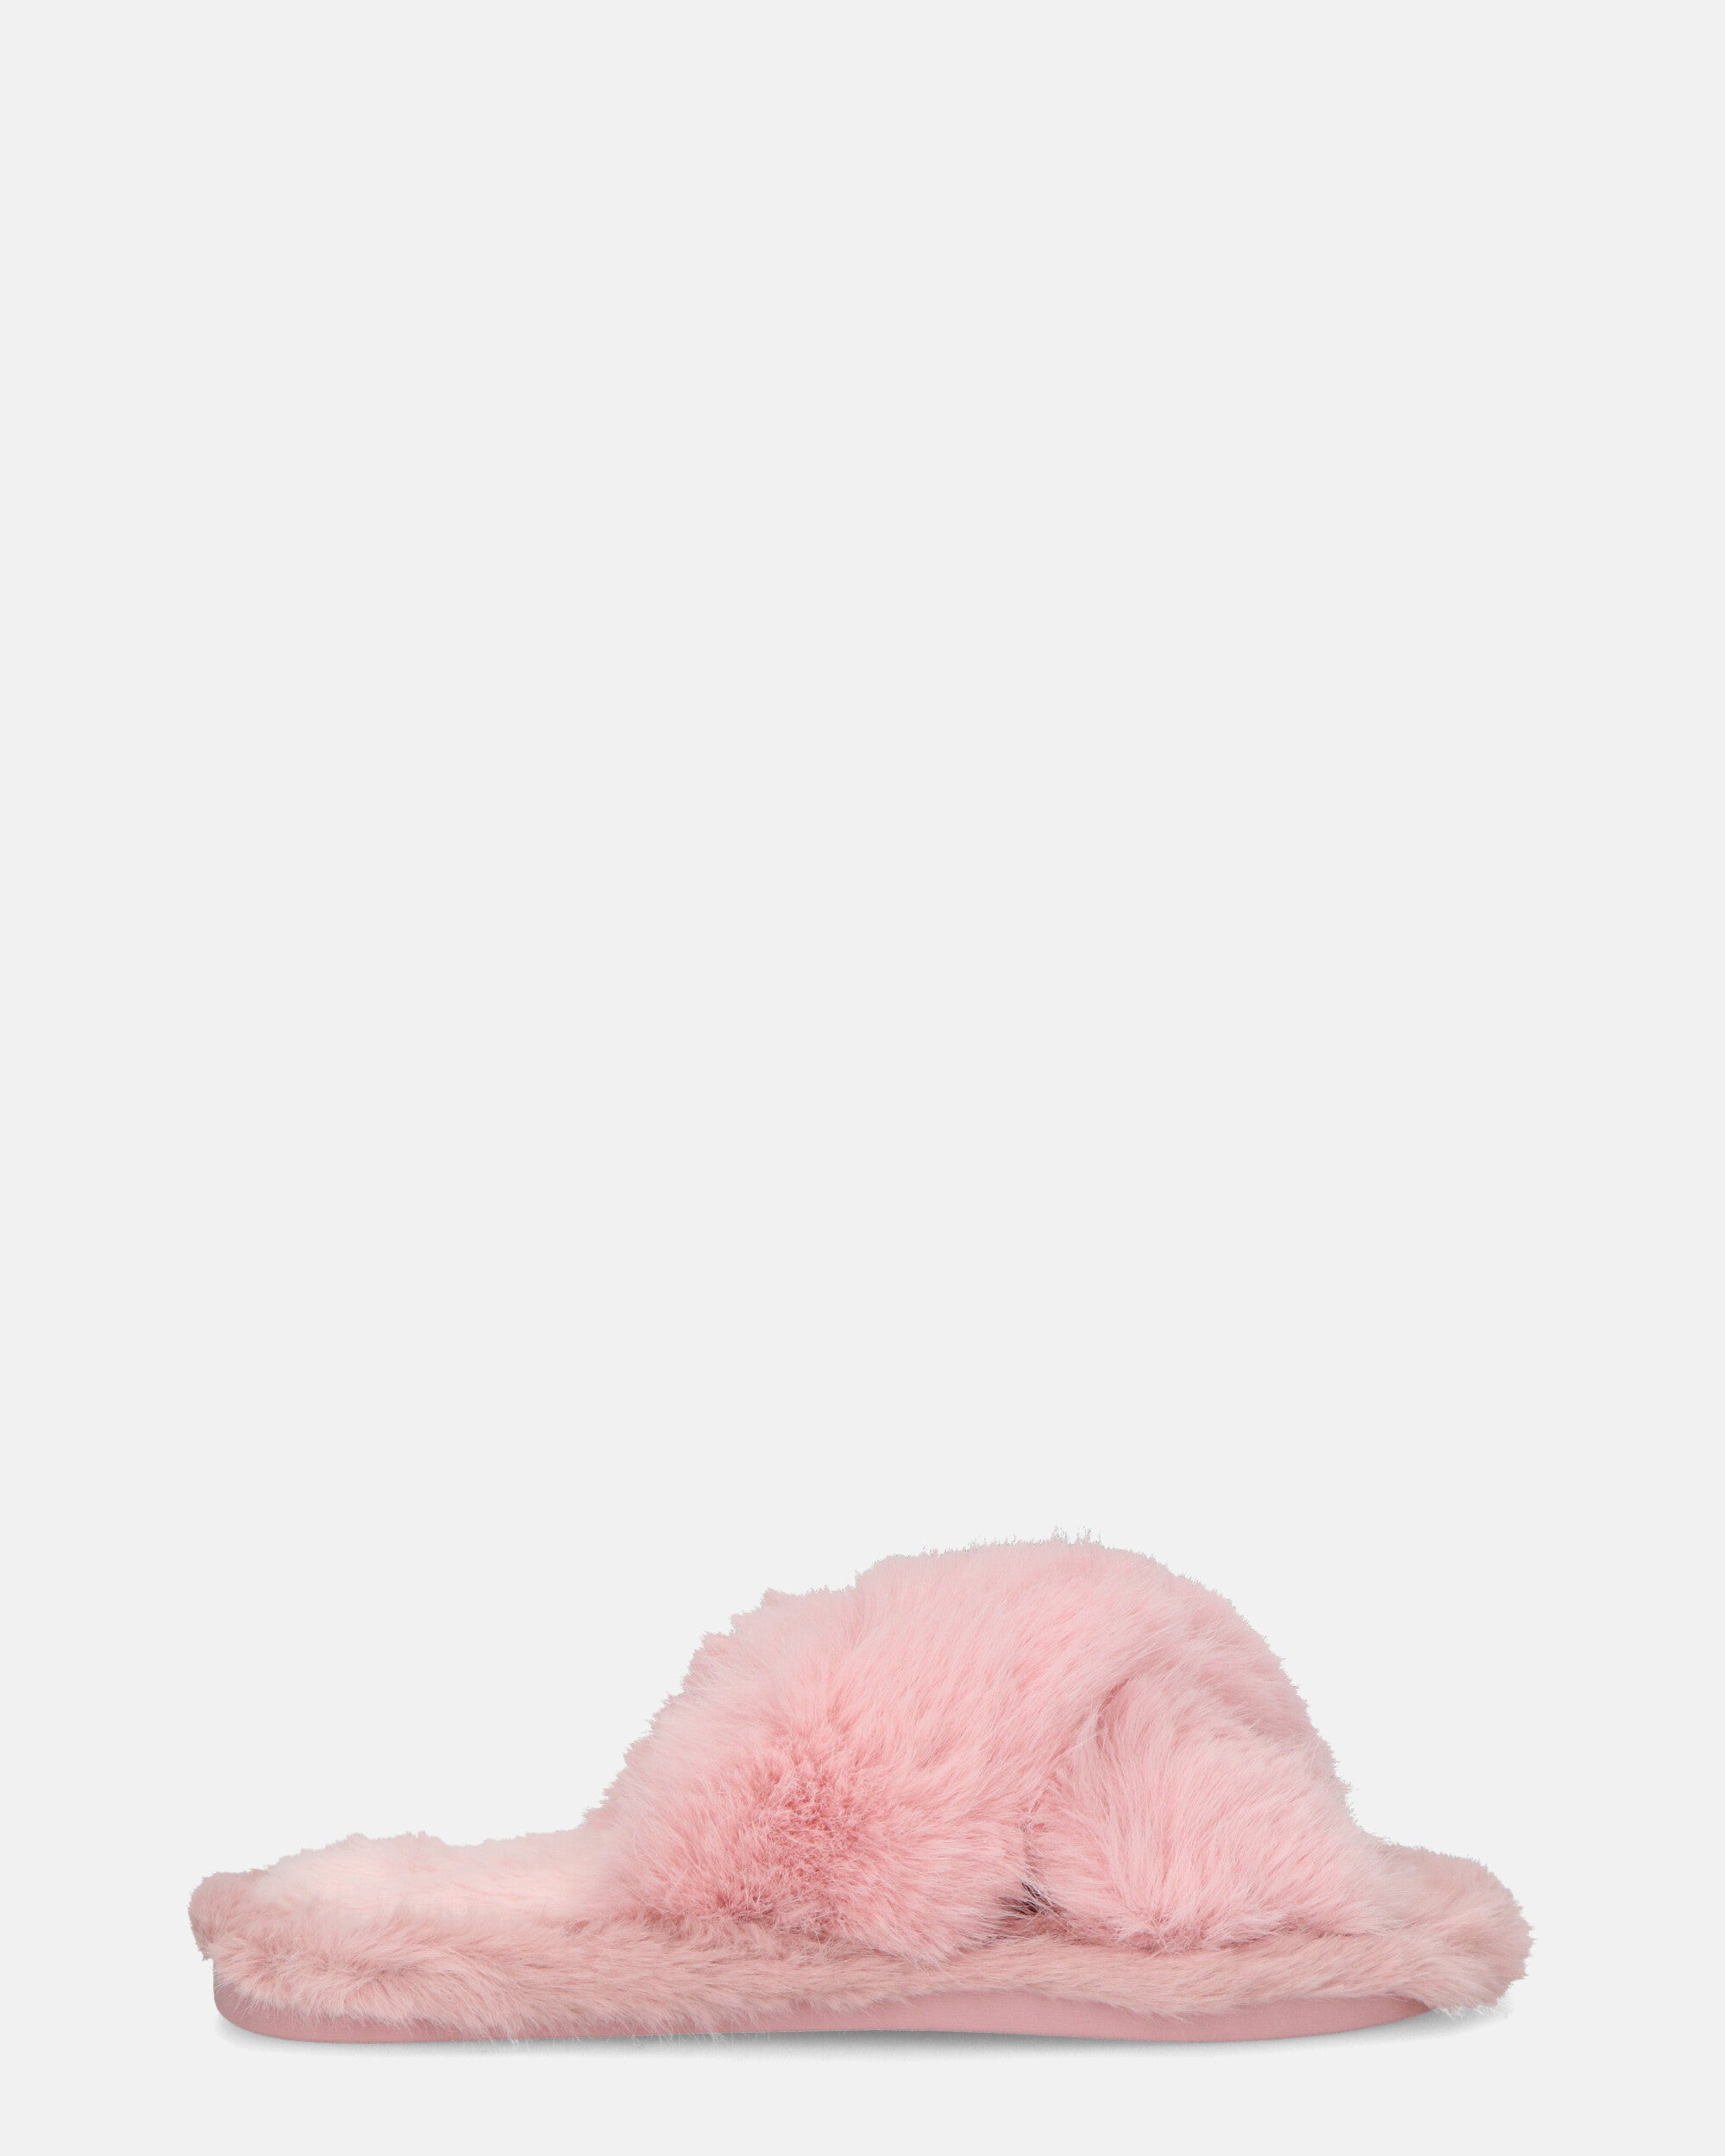 SUZUE - pantuflas abiertas con pelo rosa